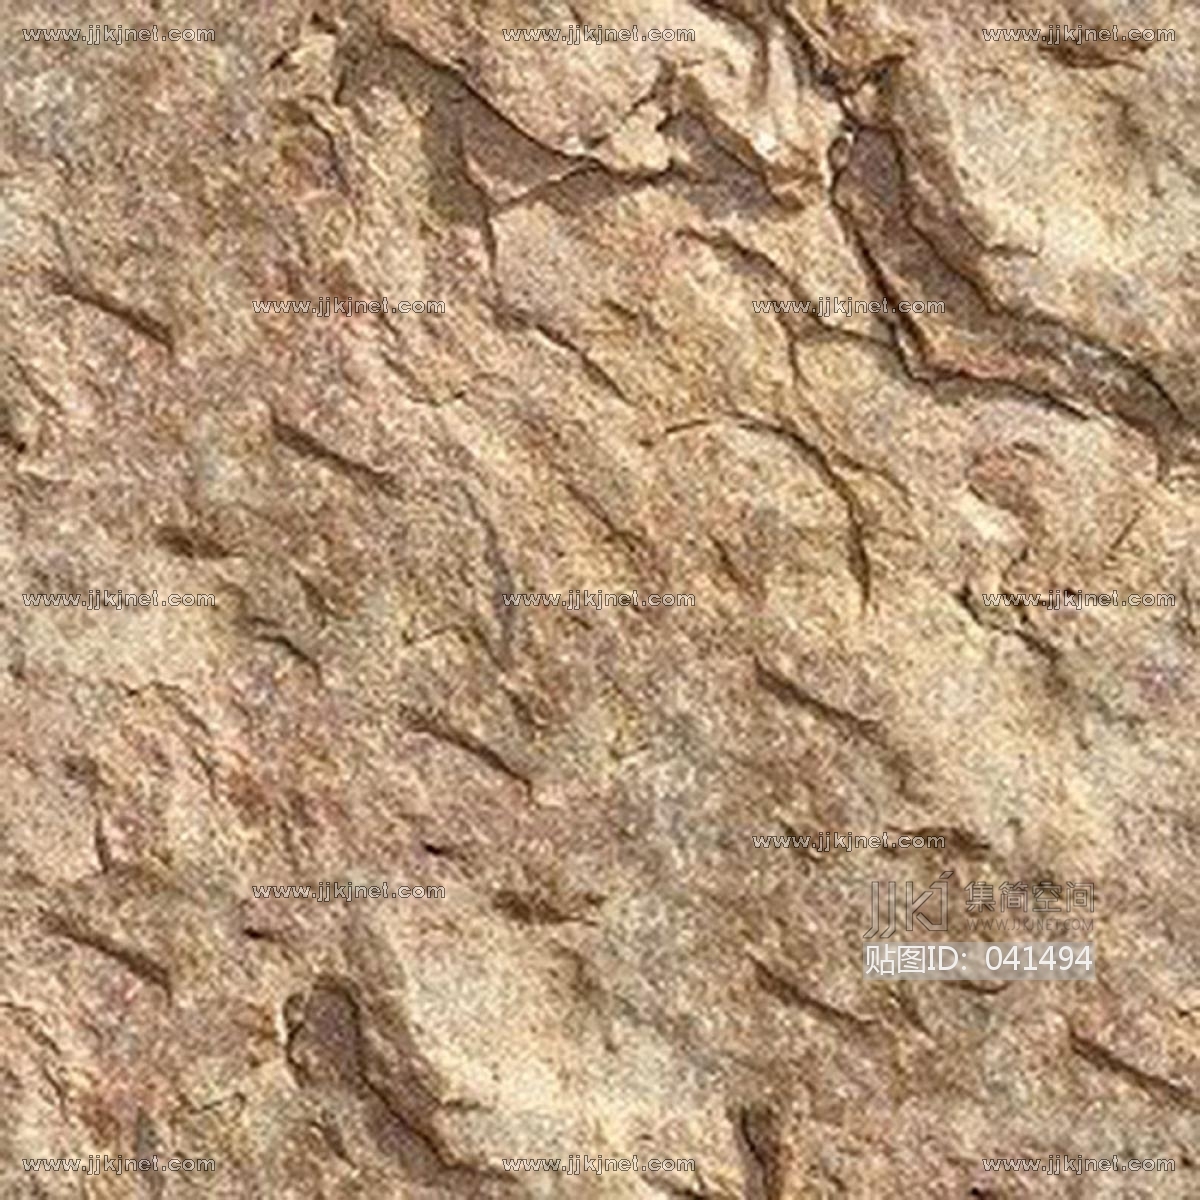 沉积岩层背景 库存图片. 图片 包括有 格朗基, 矿物, 砂岩, 小卵石, 水平, 地质, 大理石, 颜色 - 163082477